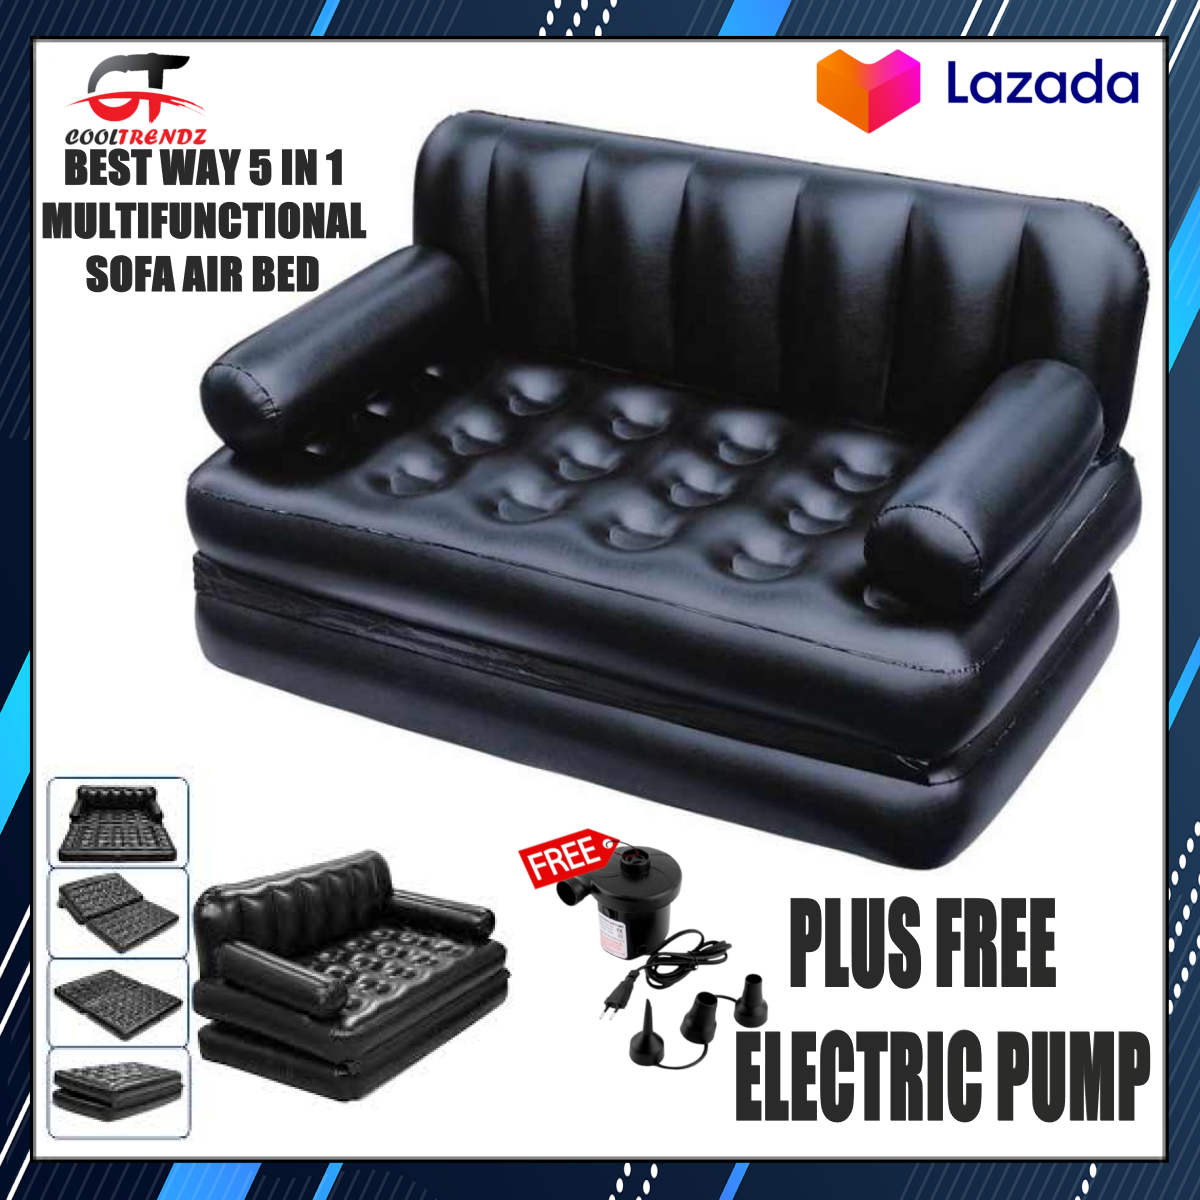 Multifunctional Sofa Air Bed